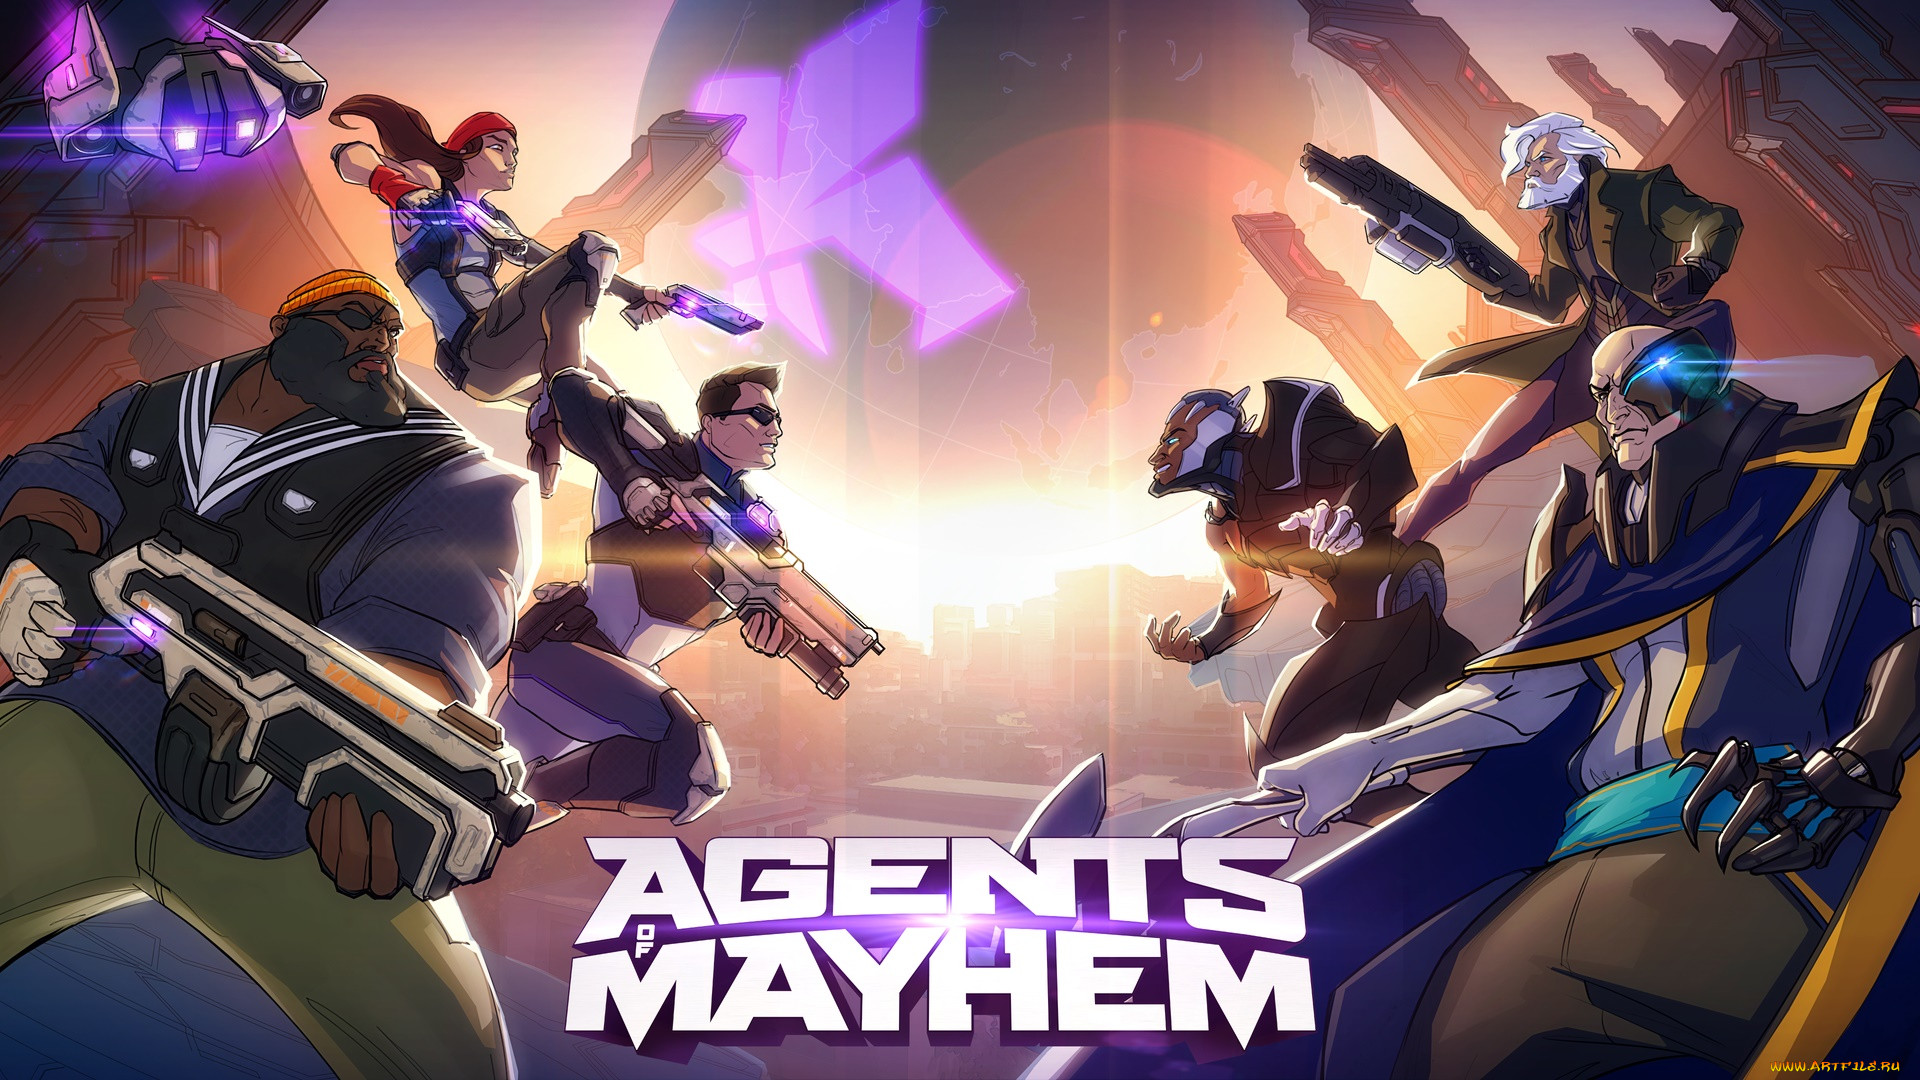  , agents of mayhem, agents, of, mayhem